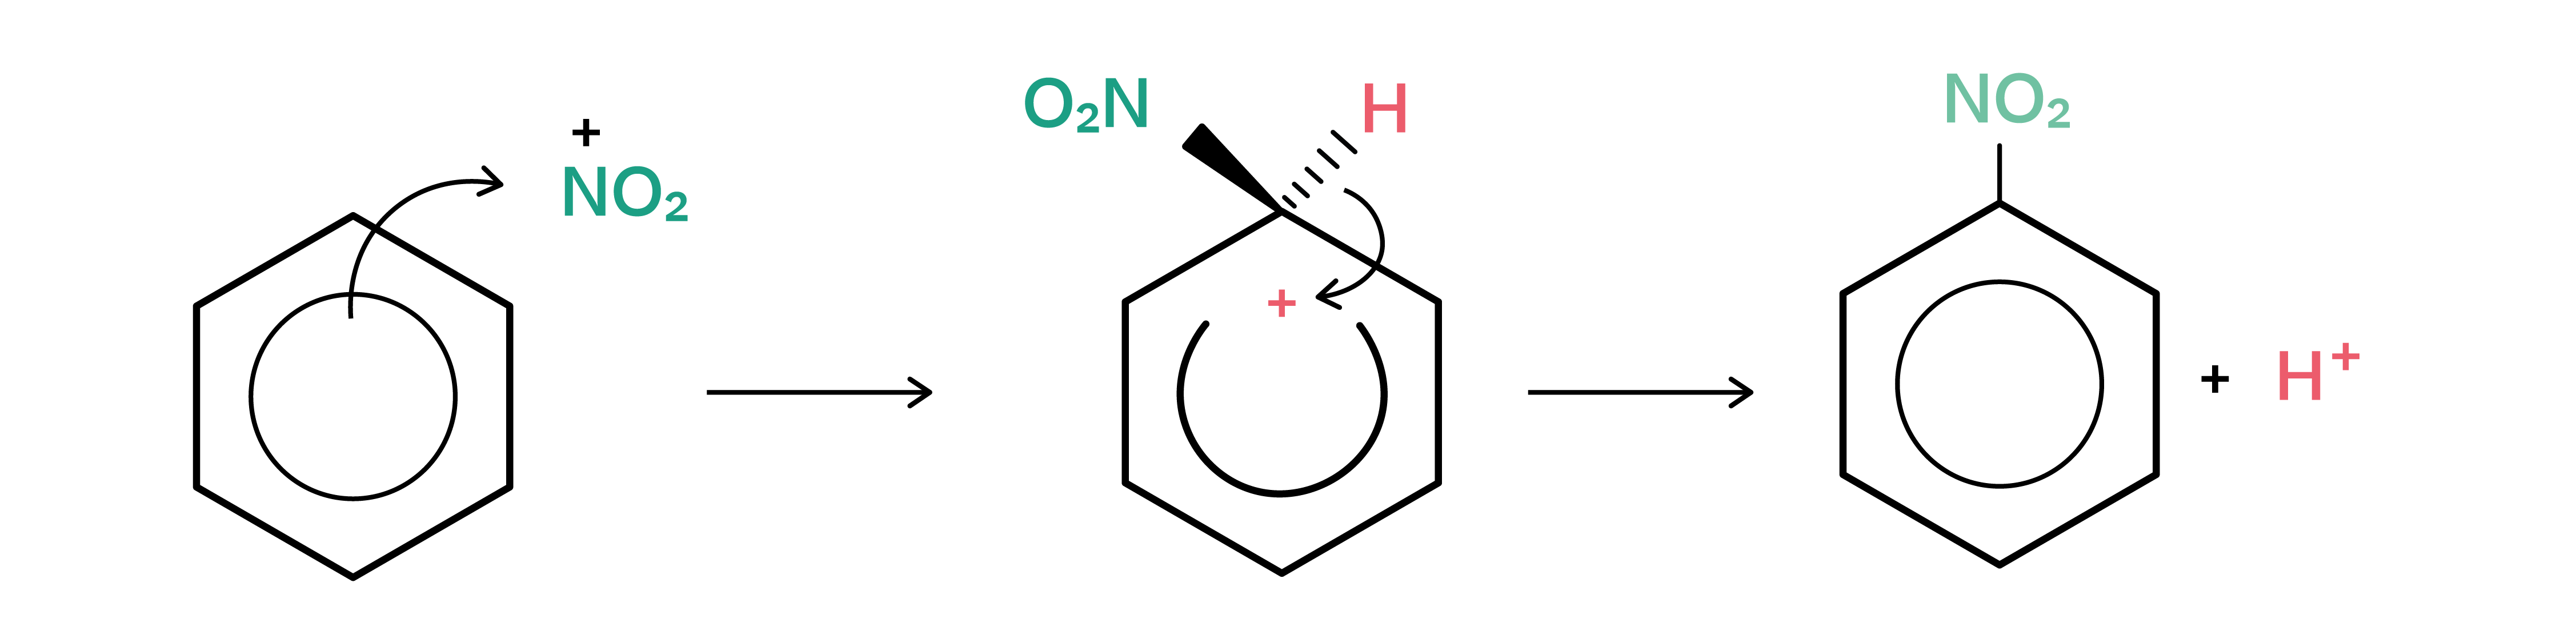 Chemie; Aromatische Kohlenwasserstoffe; 3. Gymi; Reaktionsmechanismus der elektrophilen Substitution